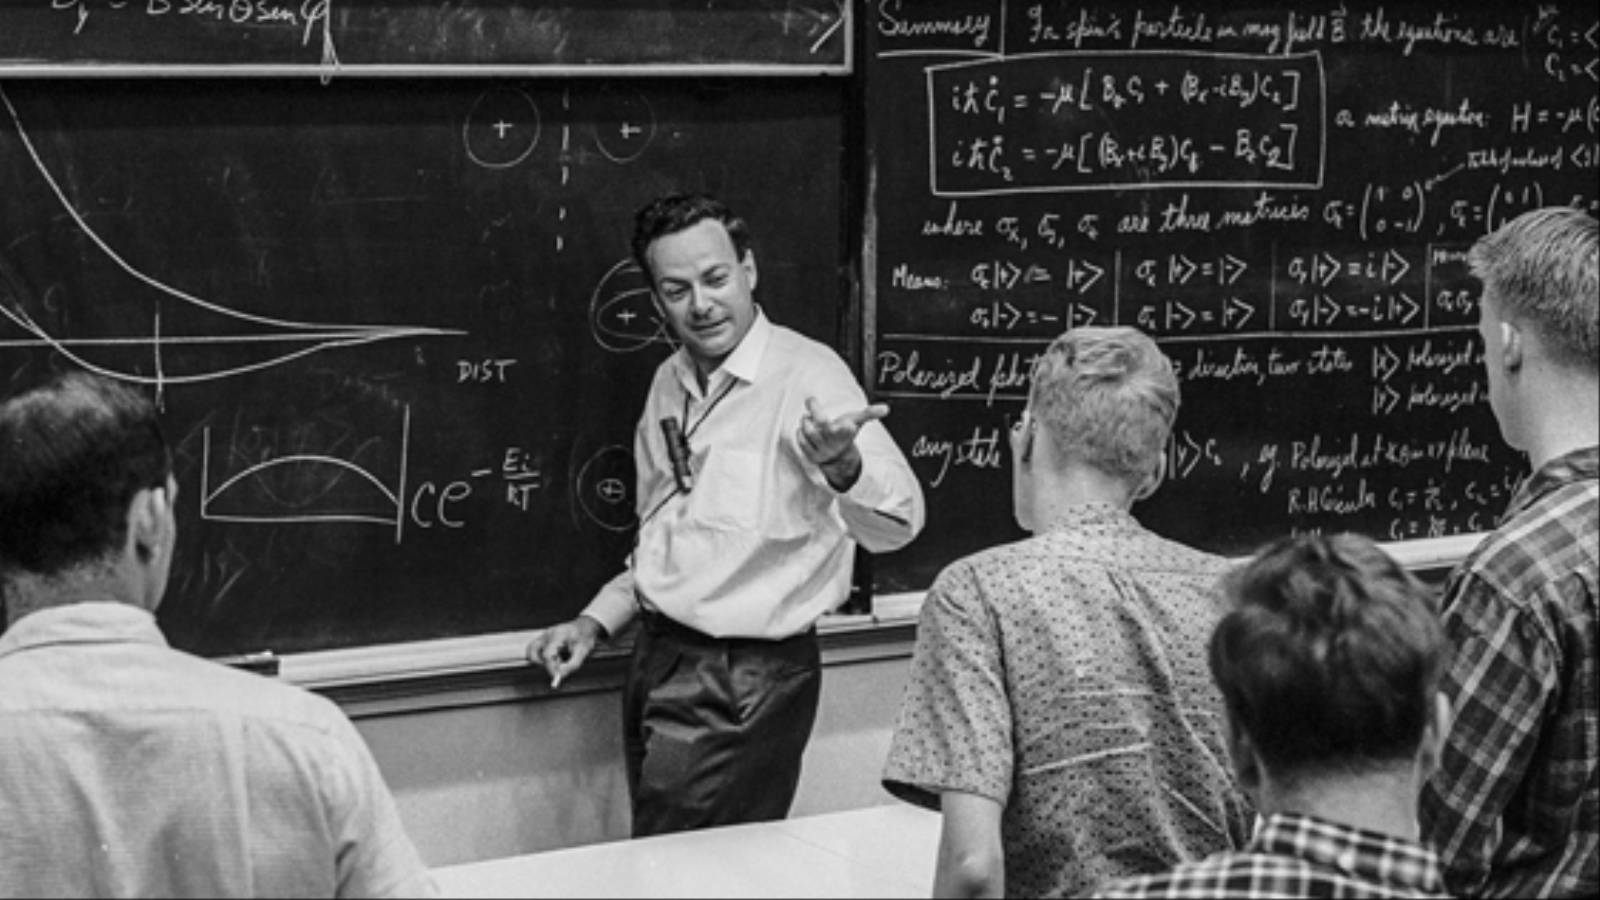 كان فاينمان شغوفًا دائما بتمثيل الأشياء للطلبة، بل إن لغة جسده، حركات يديه وأكتافه أثناء الشرح كانت دائمًا قادرة على لعب دور بقوة الكلام لشرح ما يعنيه فاينمان (معهد كاليفورنيا للتقنية caltech)